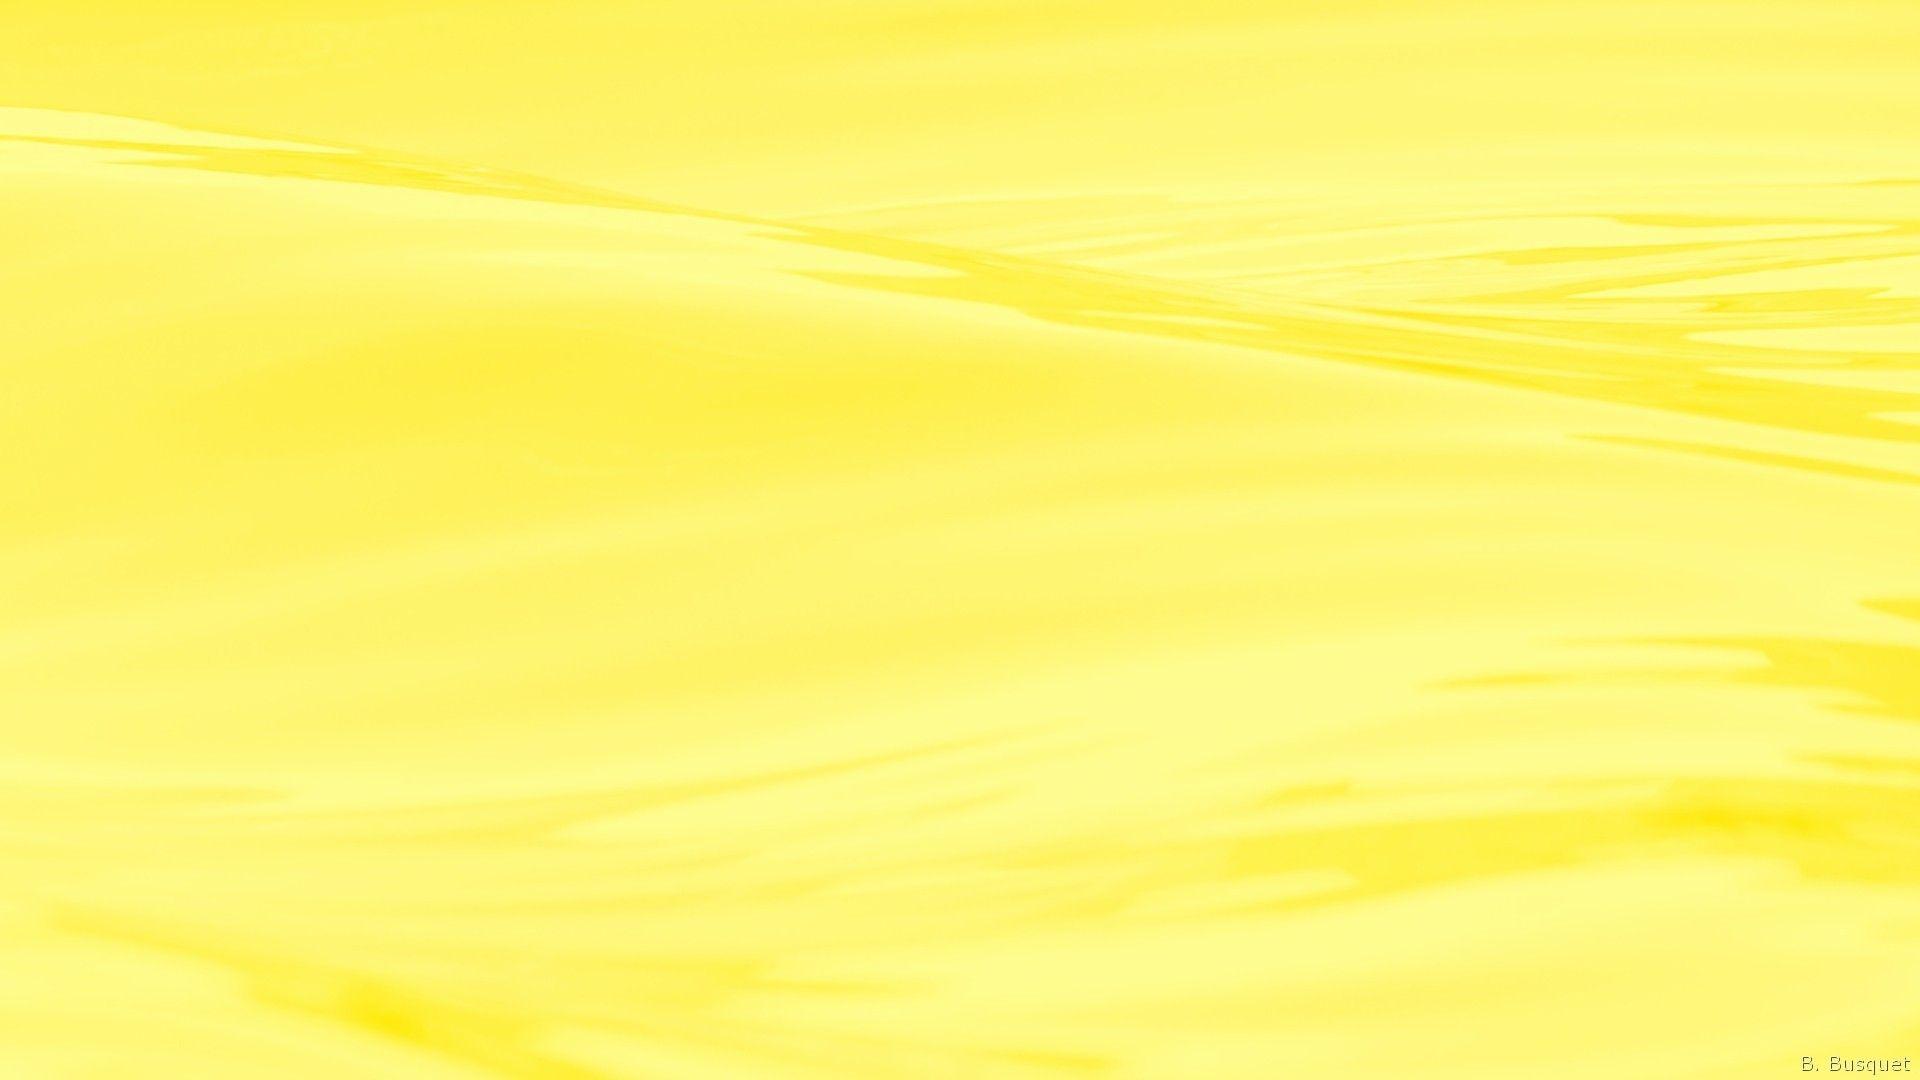 Hình nền vàng thẩm mỹ - Top hình ảnh đẹp - Wallpaper aesthetic yellow: Bạn muốn biến chiếc điện thoại của mình thành một tác phẩm nghệ thuật độc đáo? Hãy trải nghiệm trọn vẹn sự đẹp mê hồn của hình nền vàng thẩm mỹ này. Đây là những tác phẩm điêu khắc sống động nhất mà bạn đã từng thấy trên màn hình điện thoại của mình.